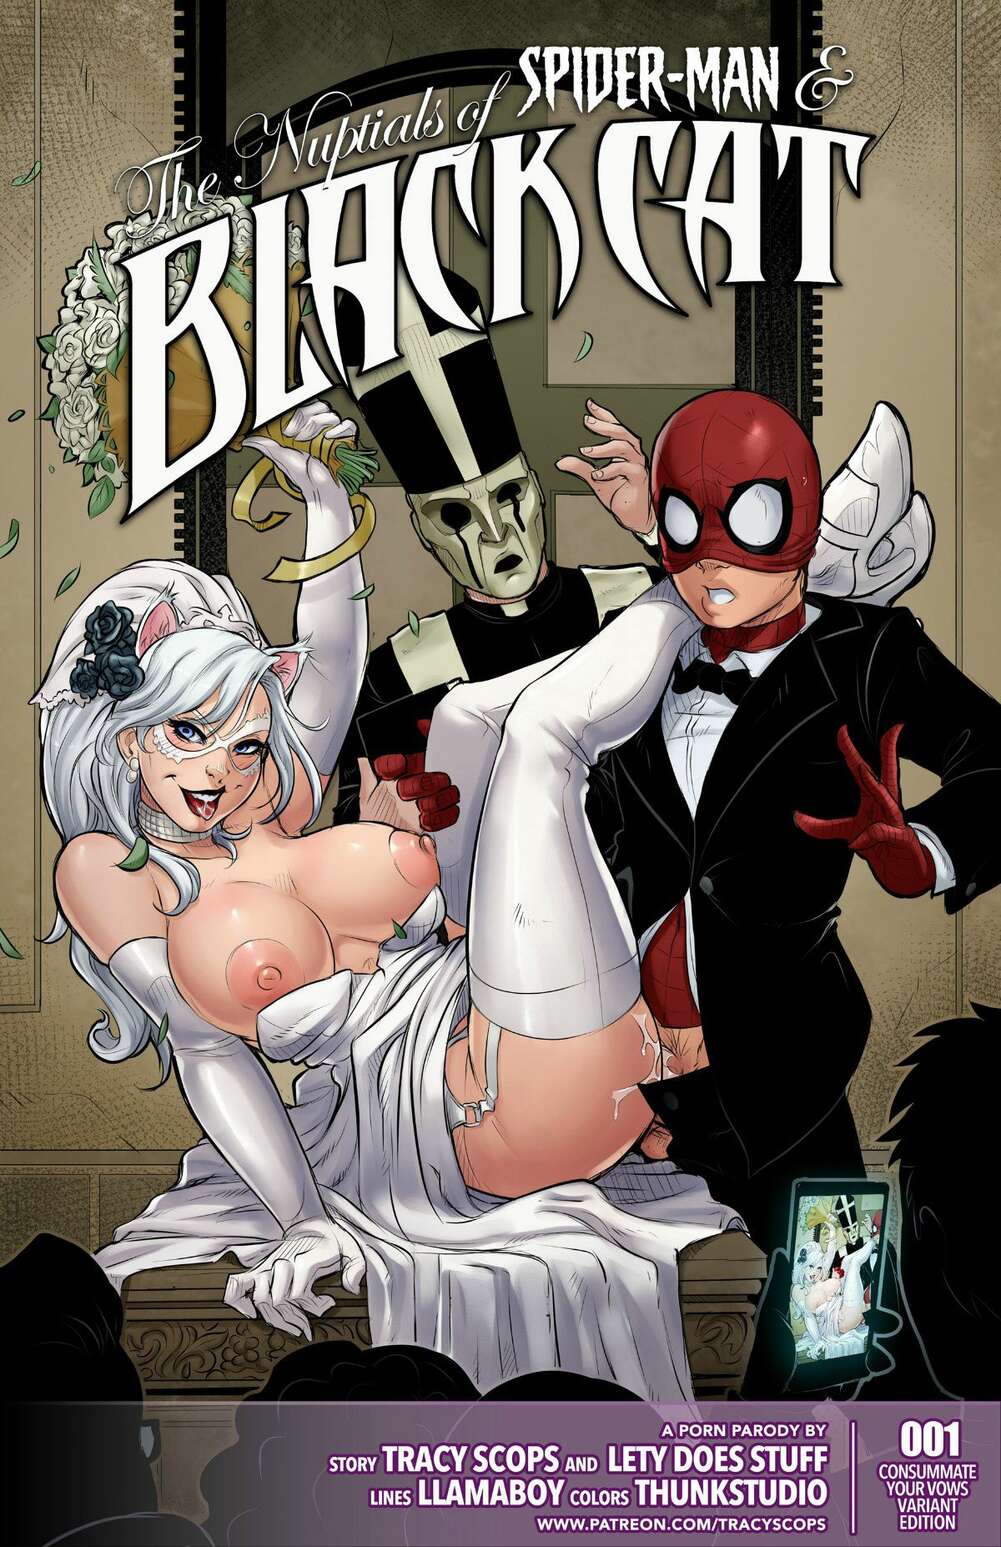 Spider Mansex - â„¹ï¸ Porn comics The Nuptials. Spider-Man. Erotic comic party suit was â„¹ï¸ |  Porn comics hentai adult only | comicsporn.site